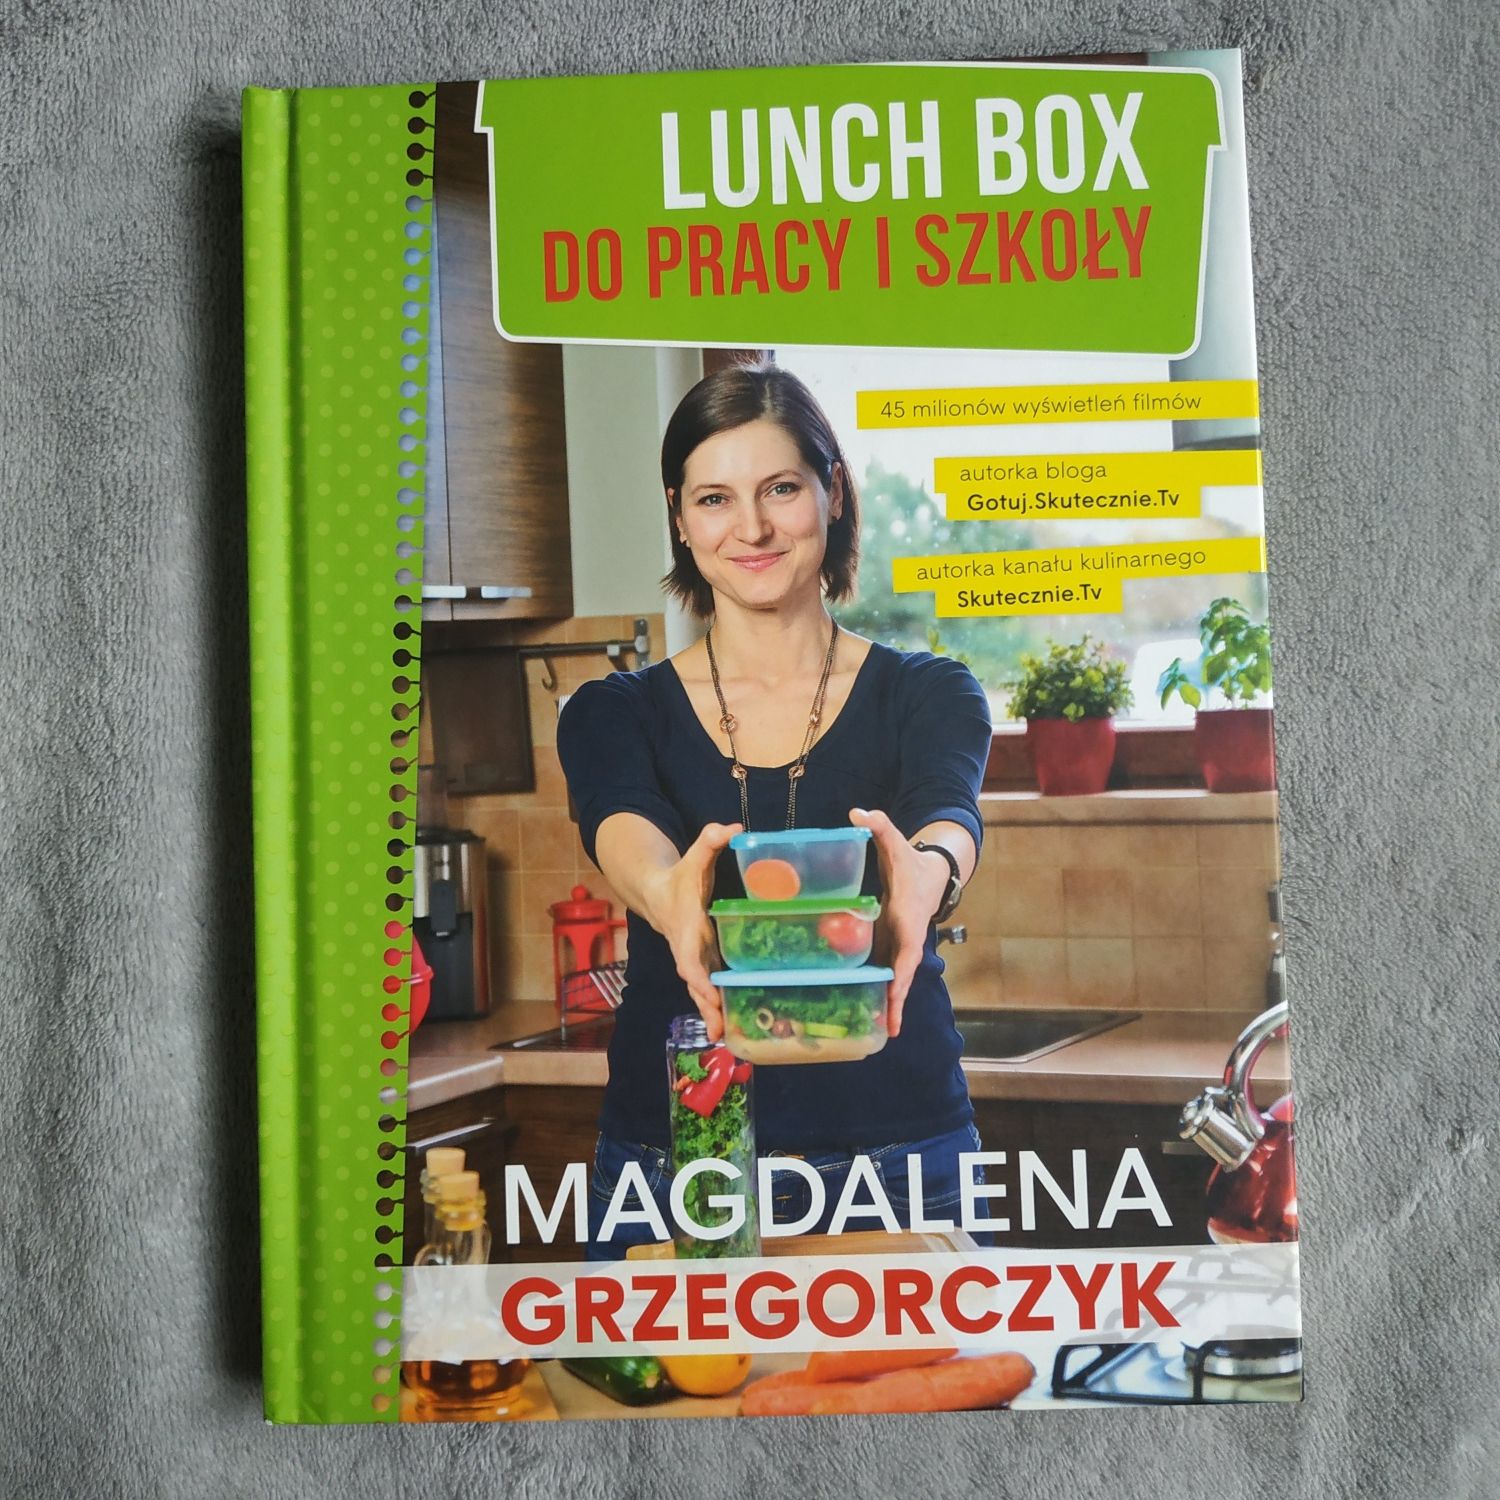 Nowa Lunch Box do pracy i szkoły Magdalena Grzegorczyk